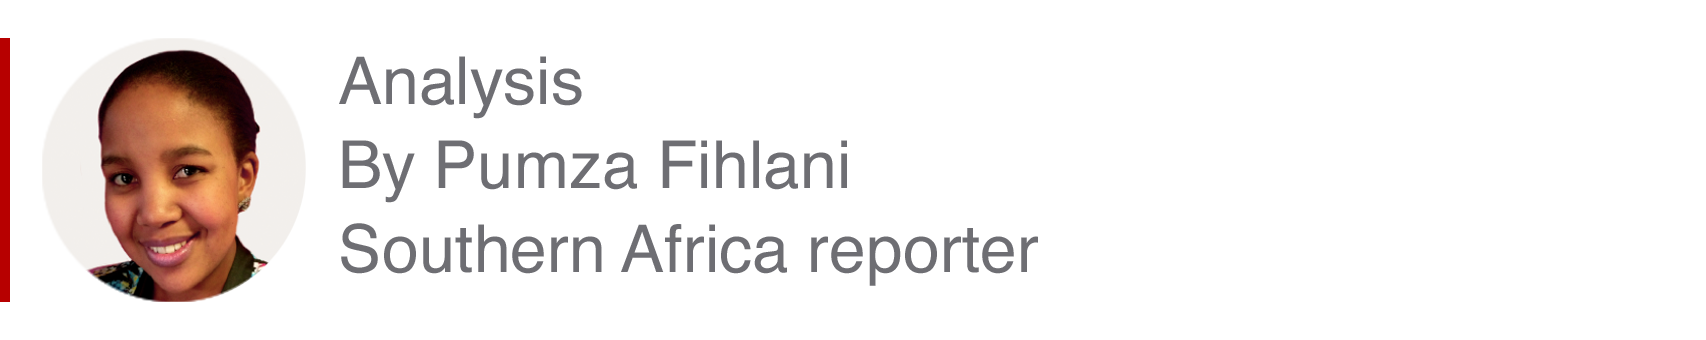 Аналитическая вставка Пумзы Филани, репортера из Южной Африки